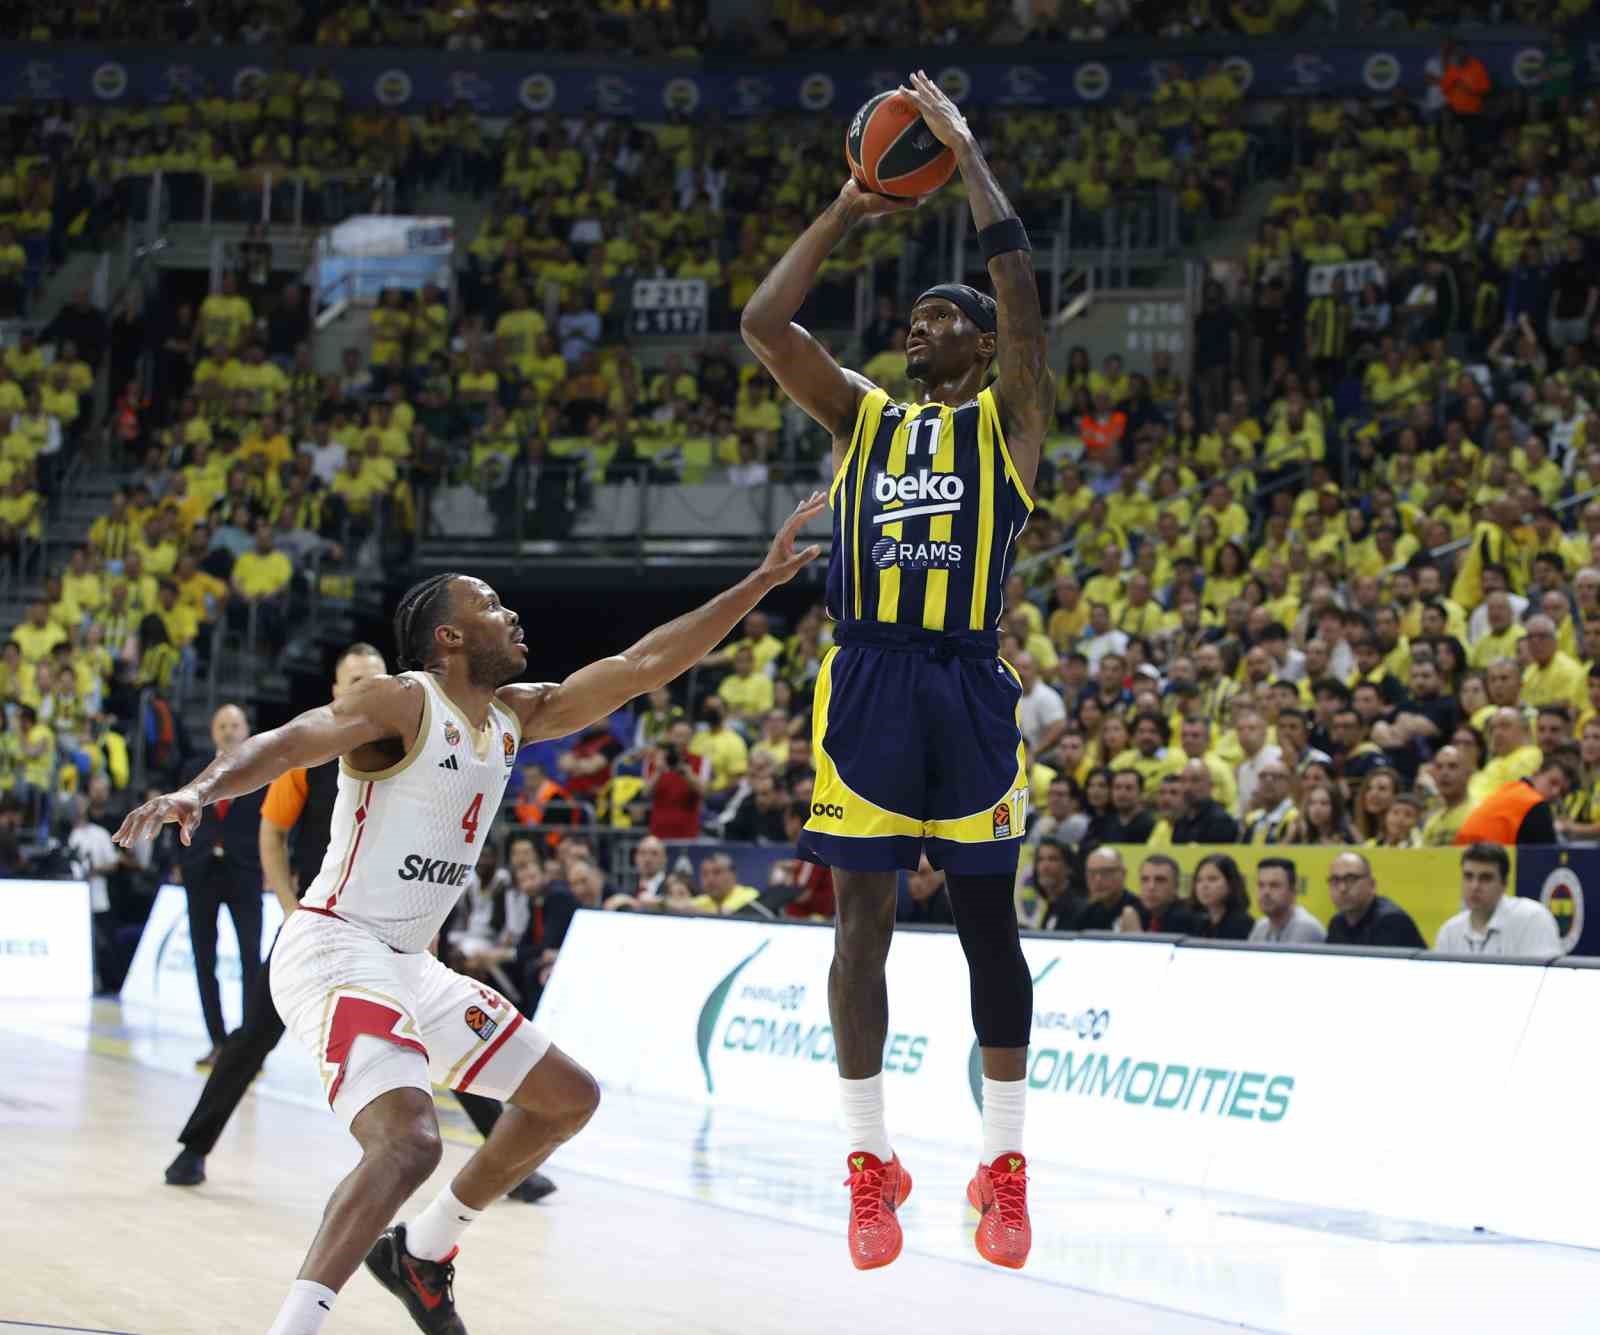 Fenerbahçe Erkek Basketbol Takımı, 5 yıllık hasreti sonlandırmak için parkede
